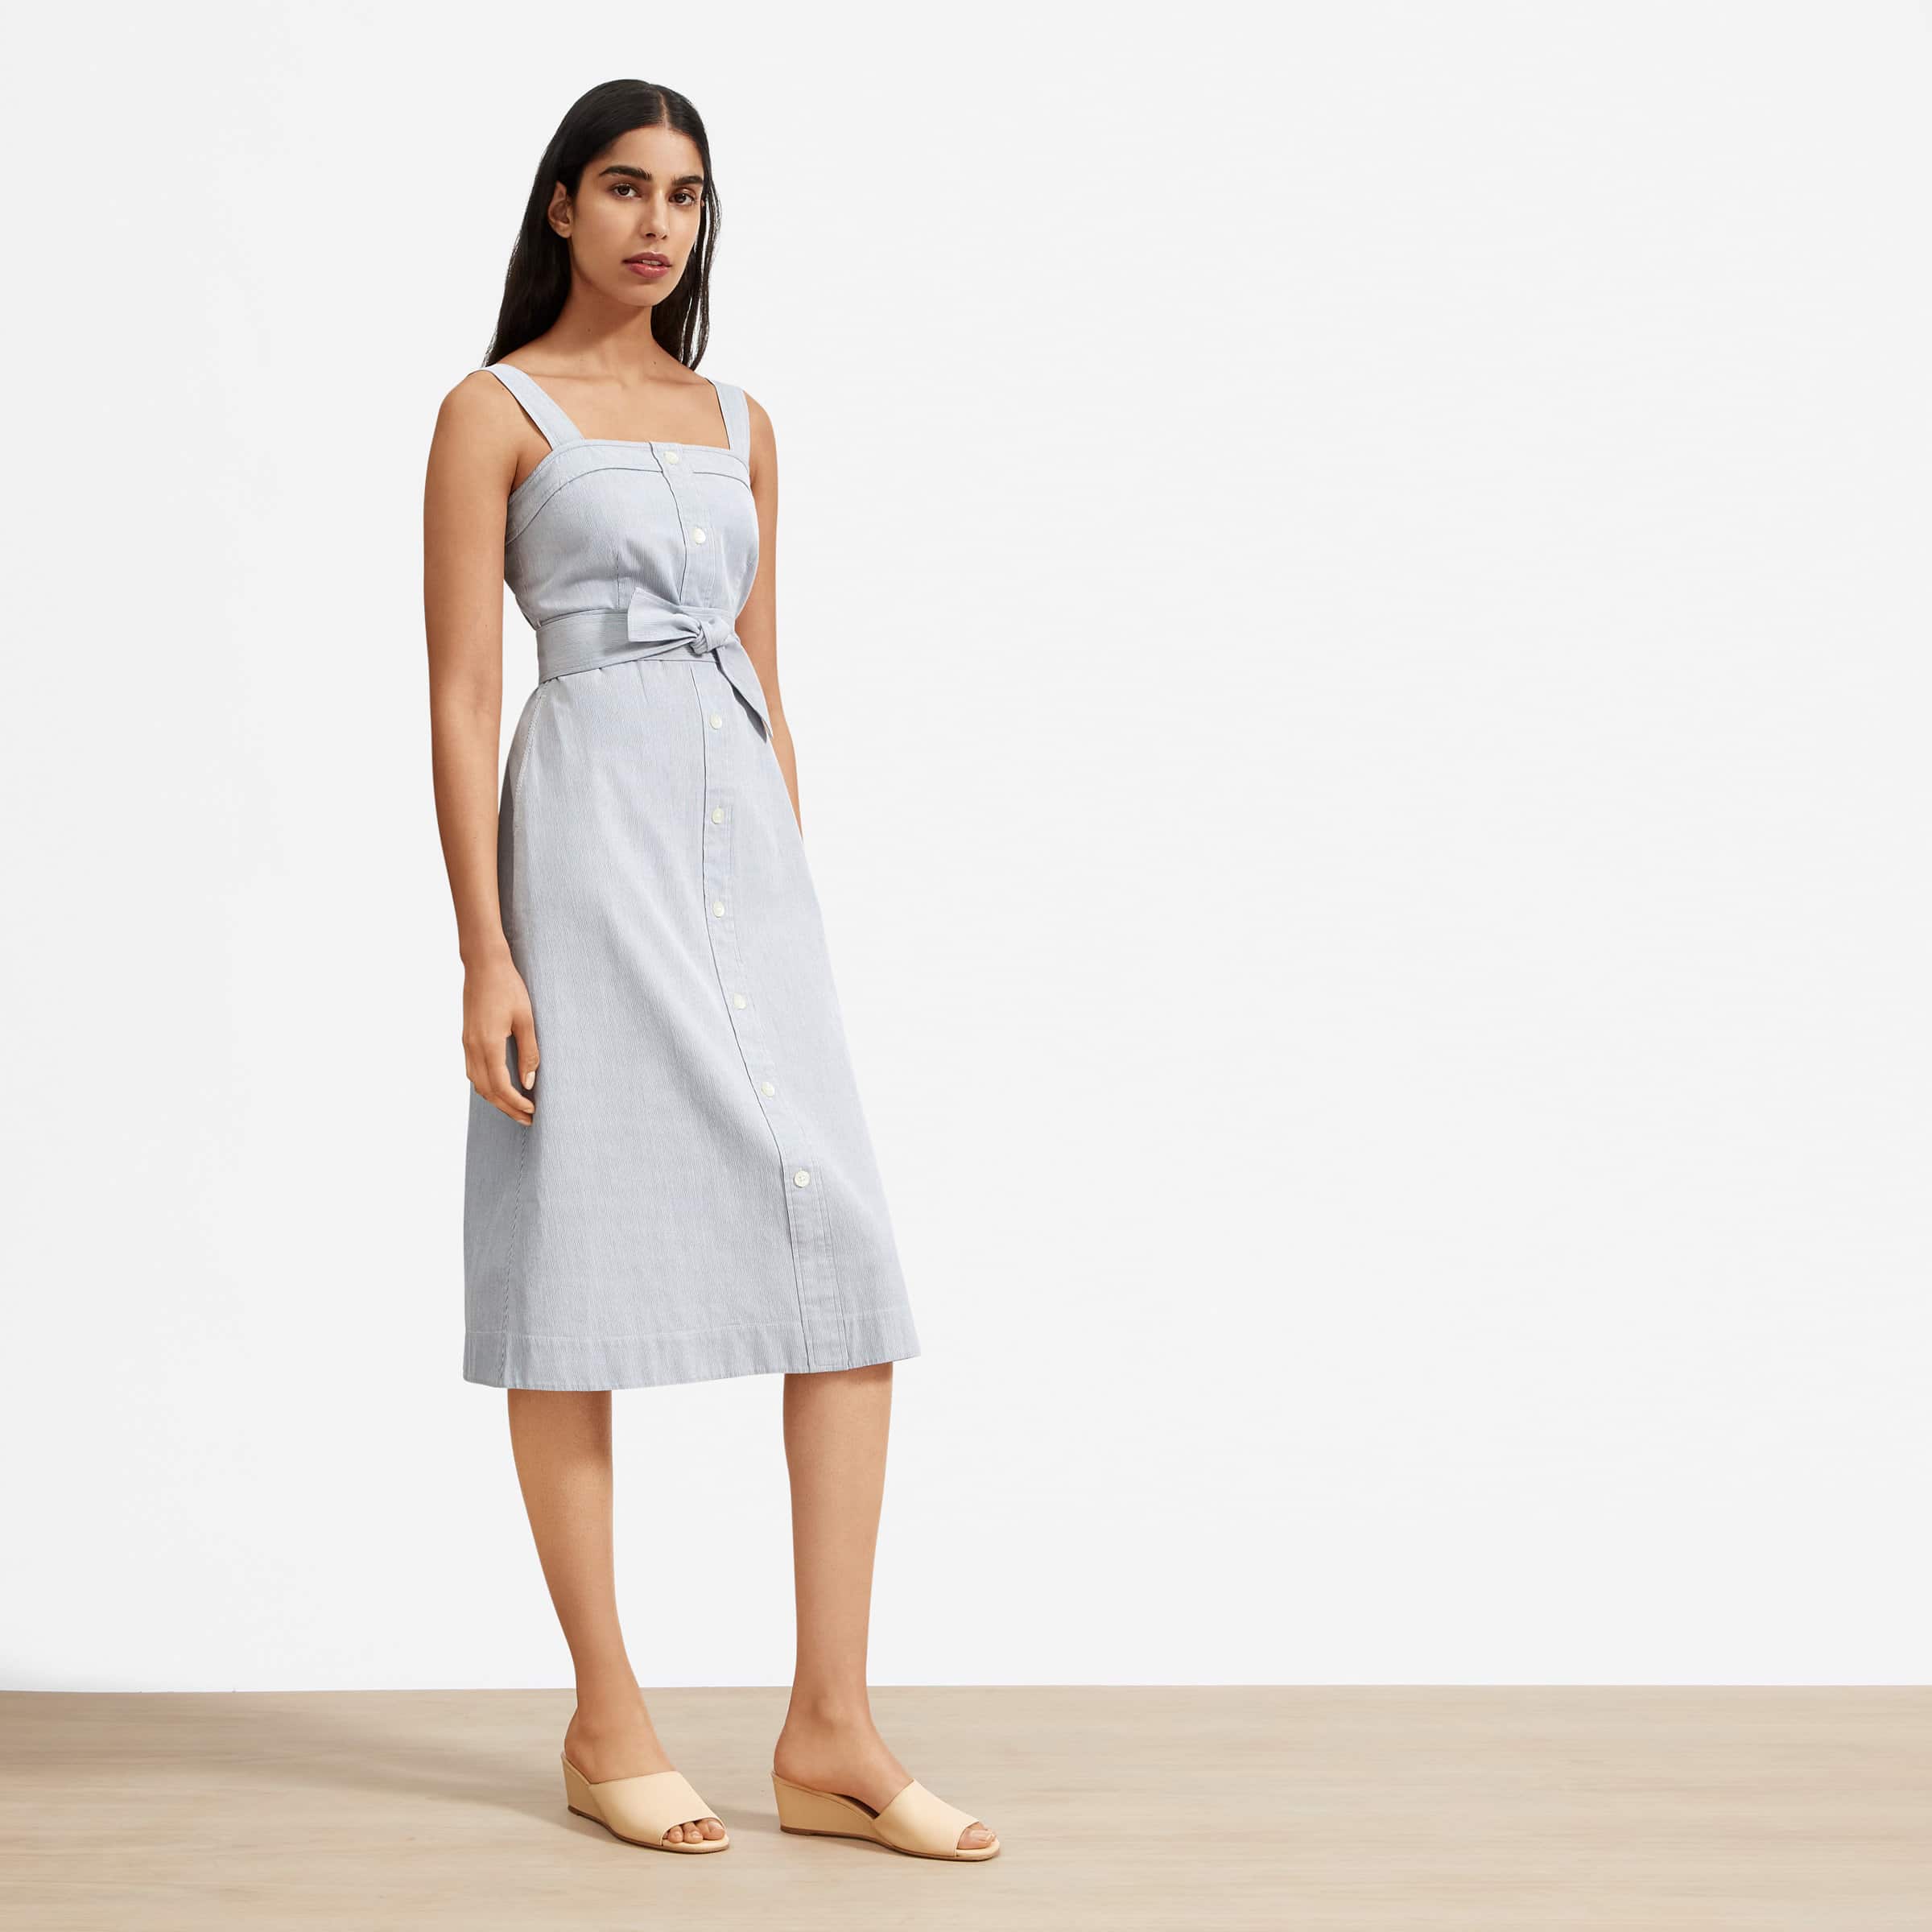 everlane, sustainable fashion, summer dresses 